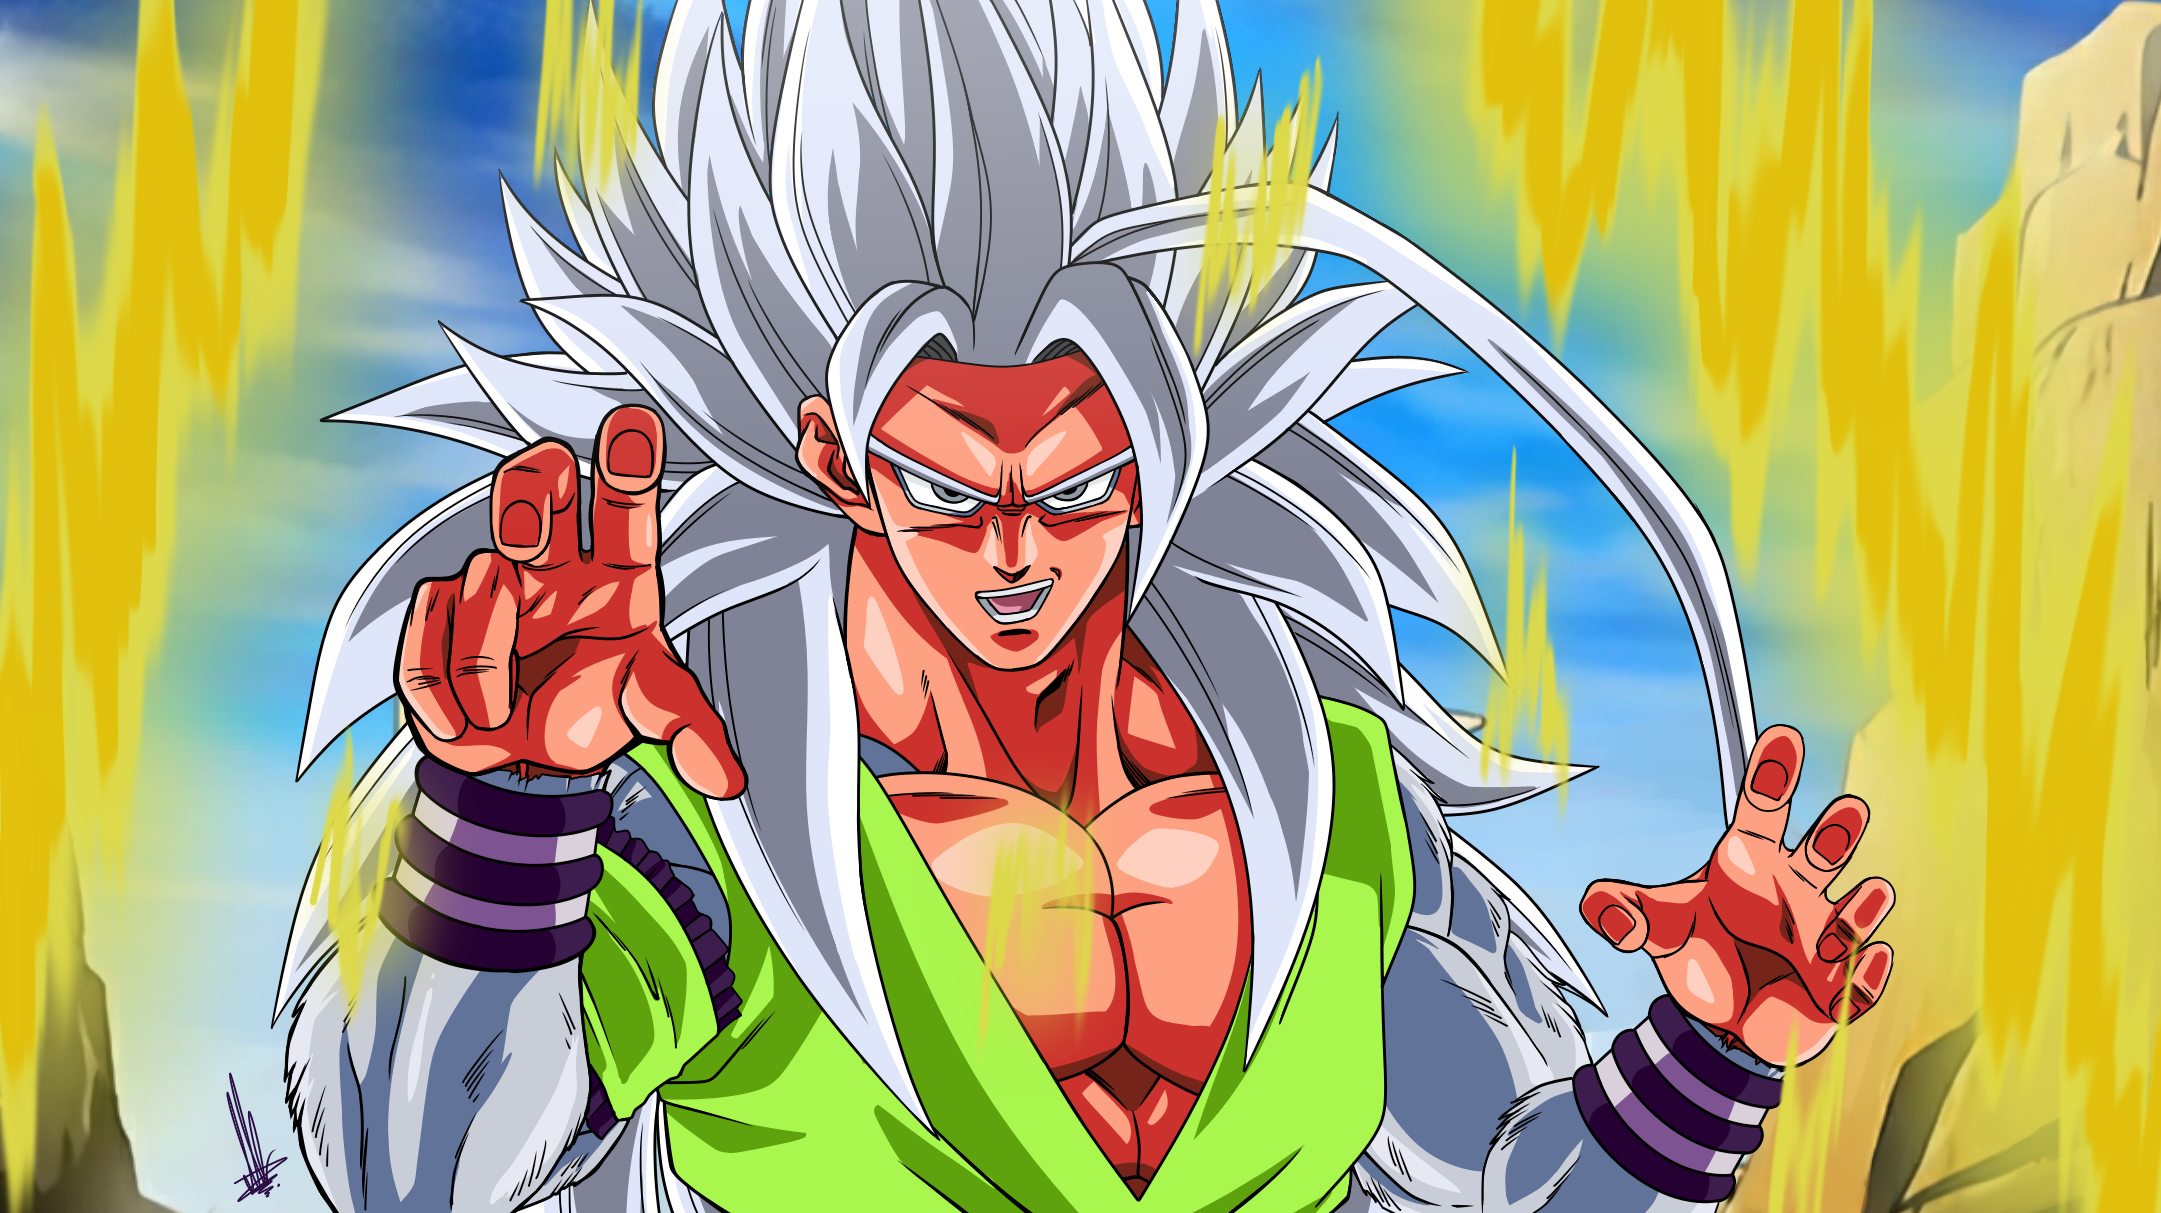 Goku Super Saiyan 5 Toyble Render by Unkoshin on DeviantArt